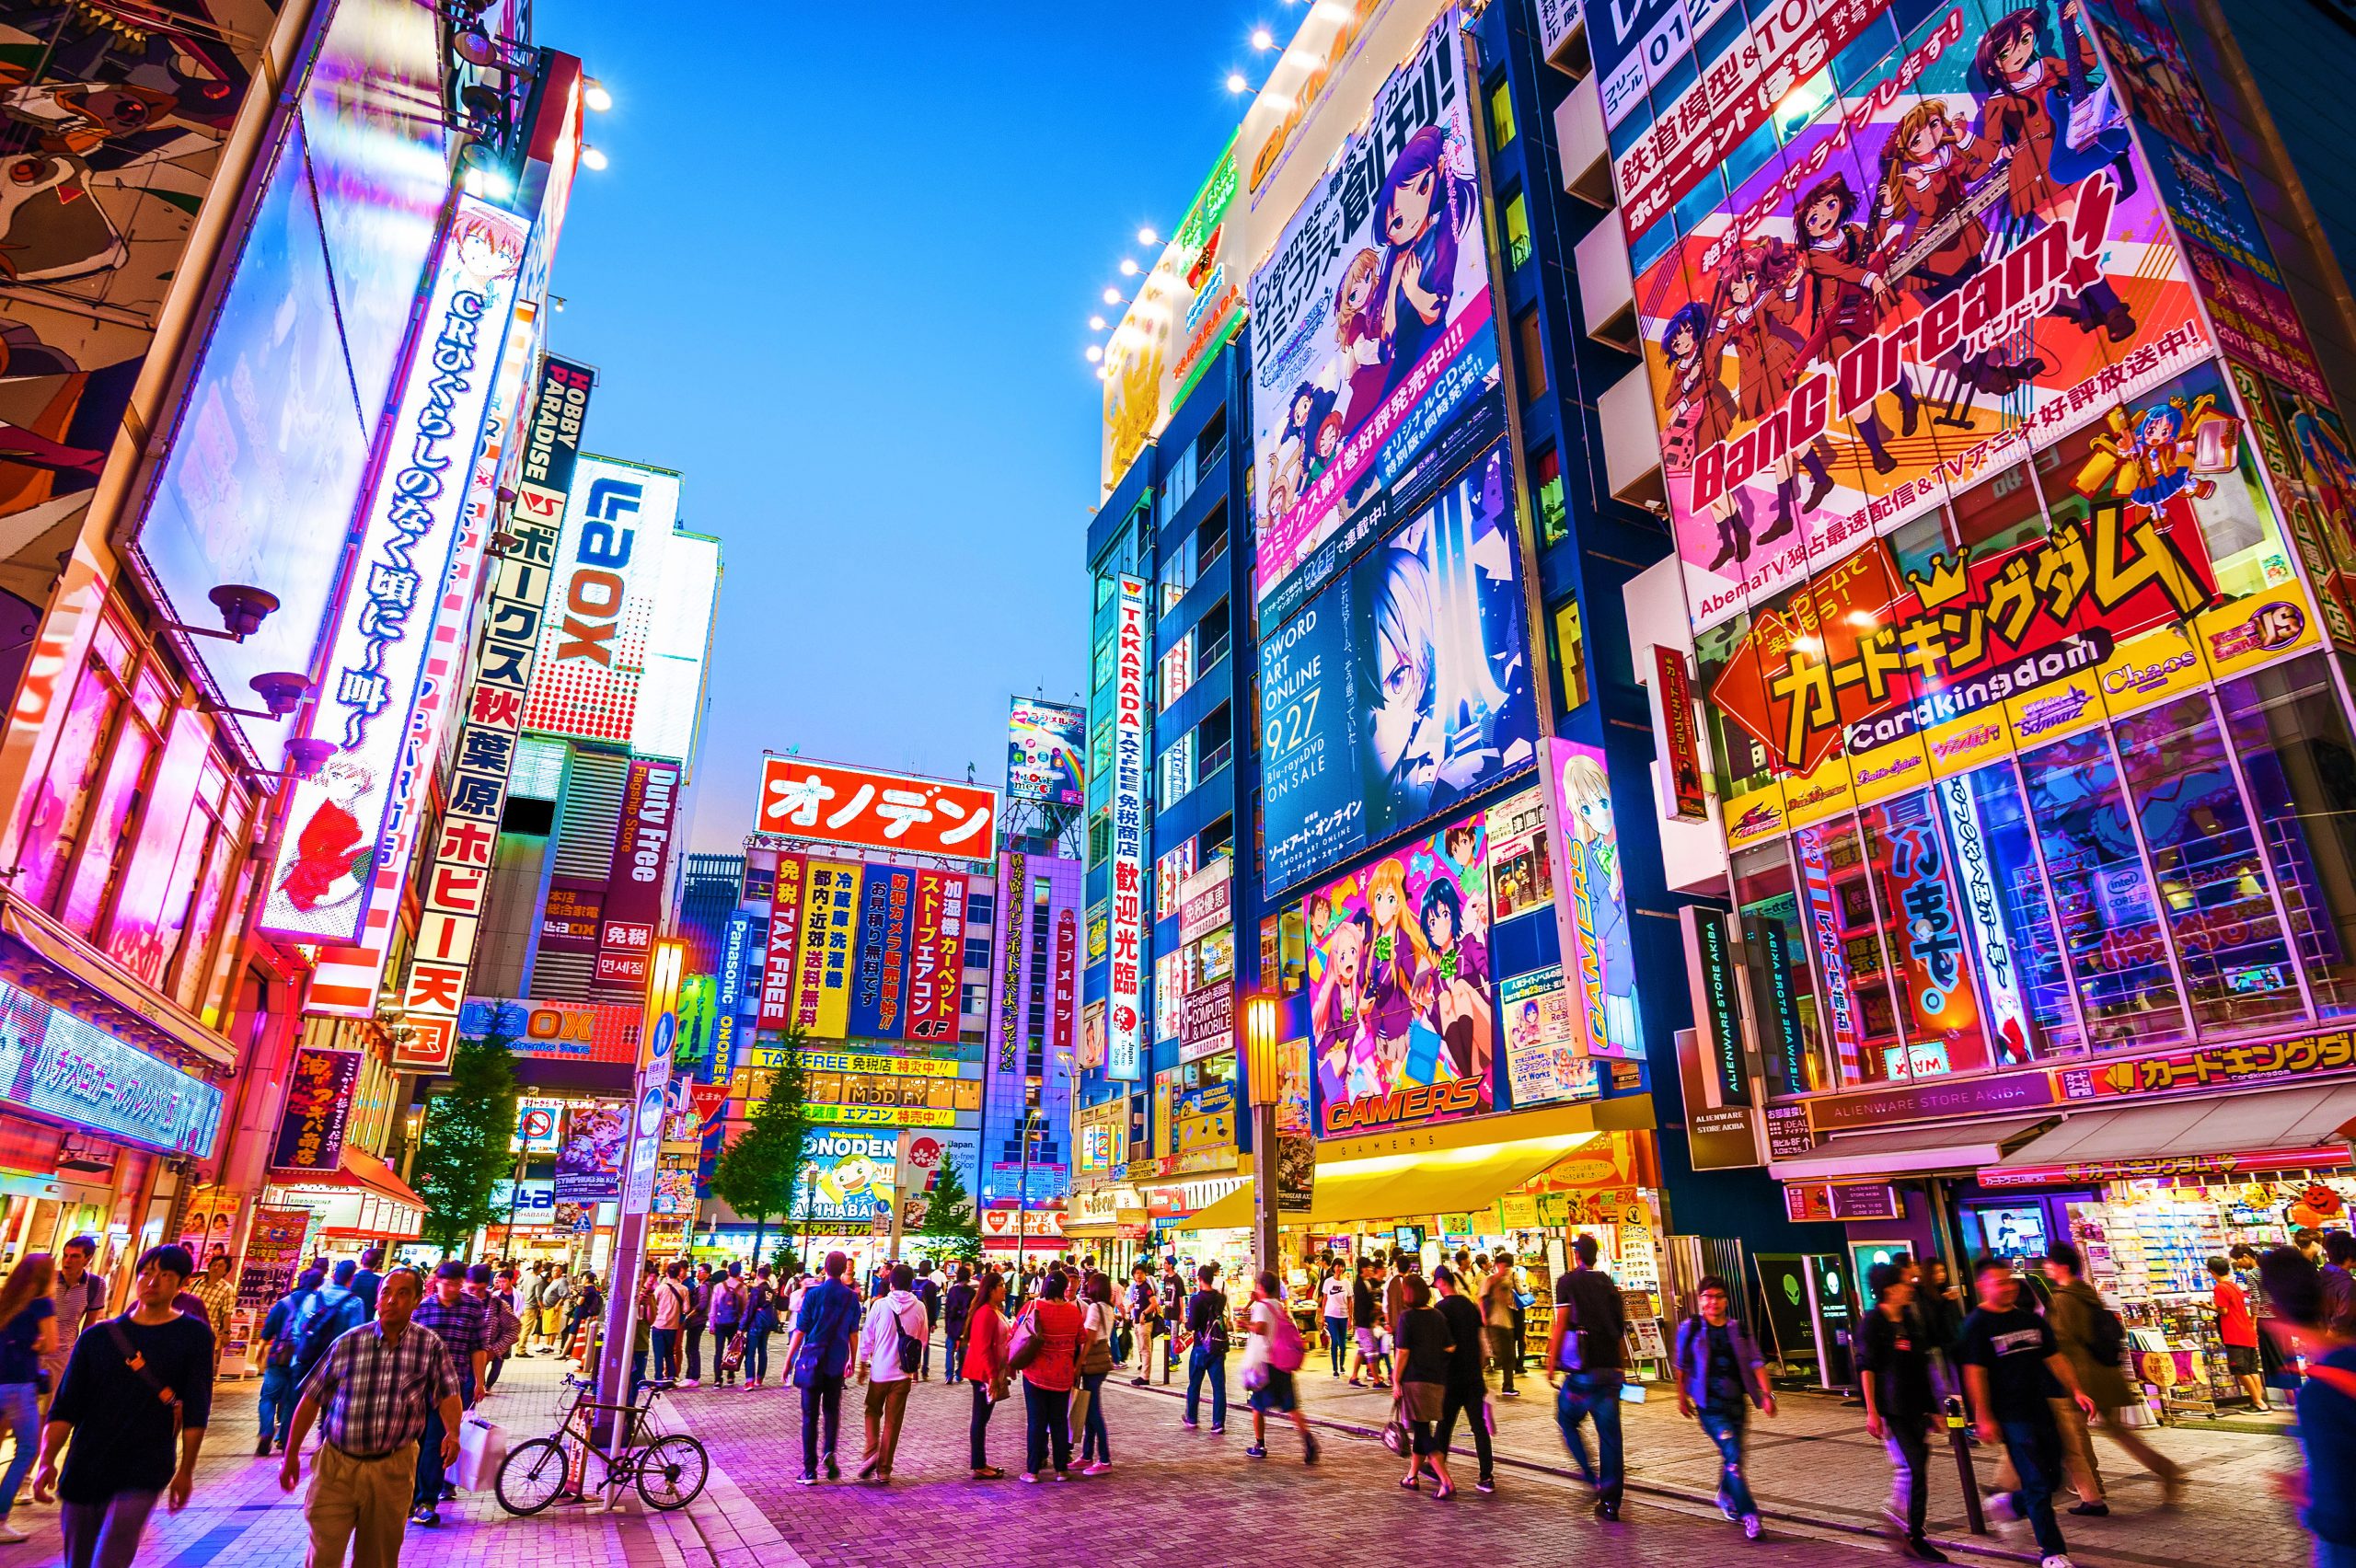 Japonia humb titullin si ekonomia e tretë më e madhe në botë